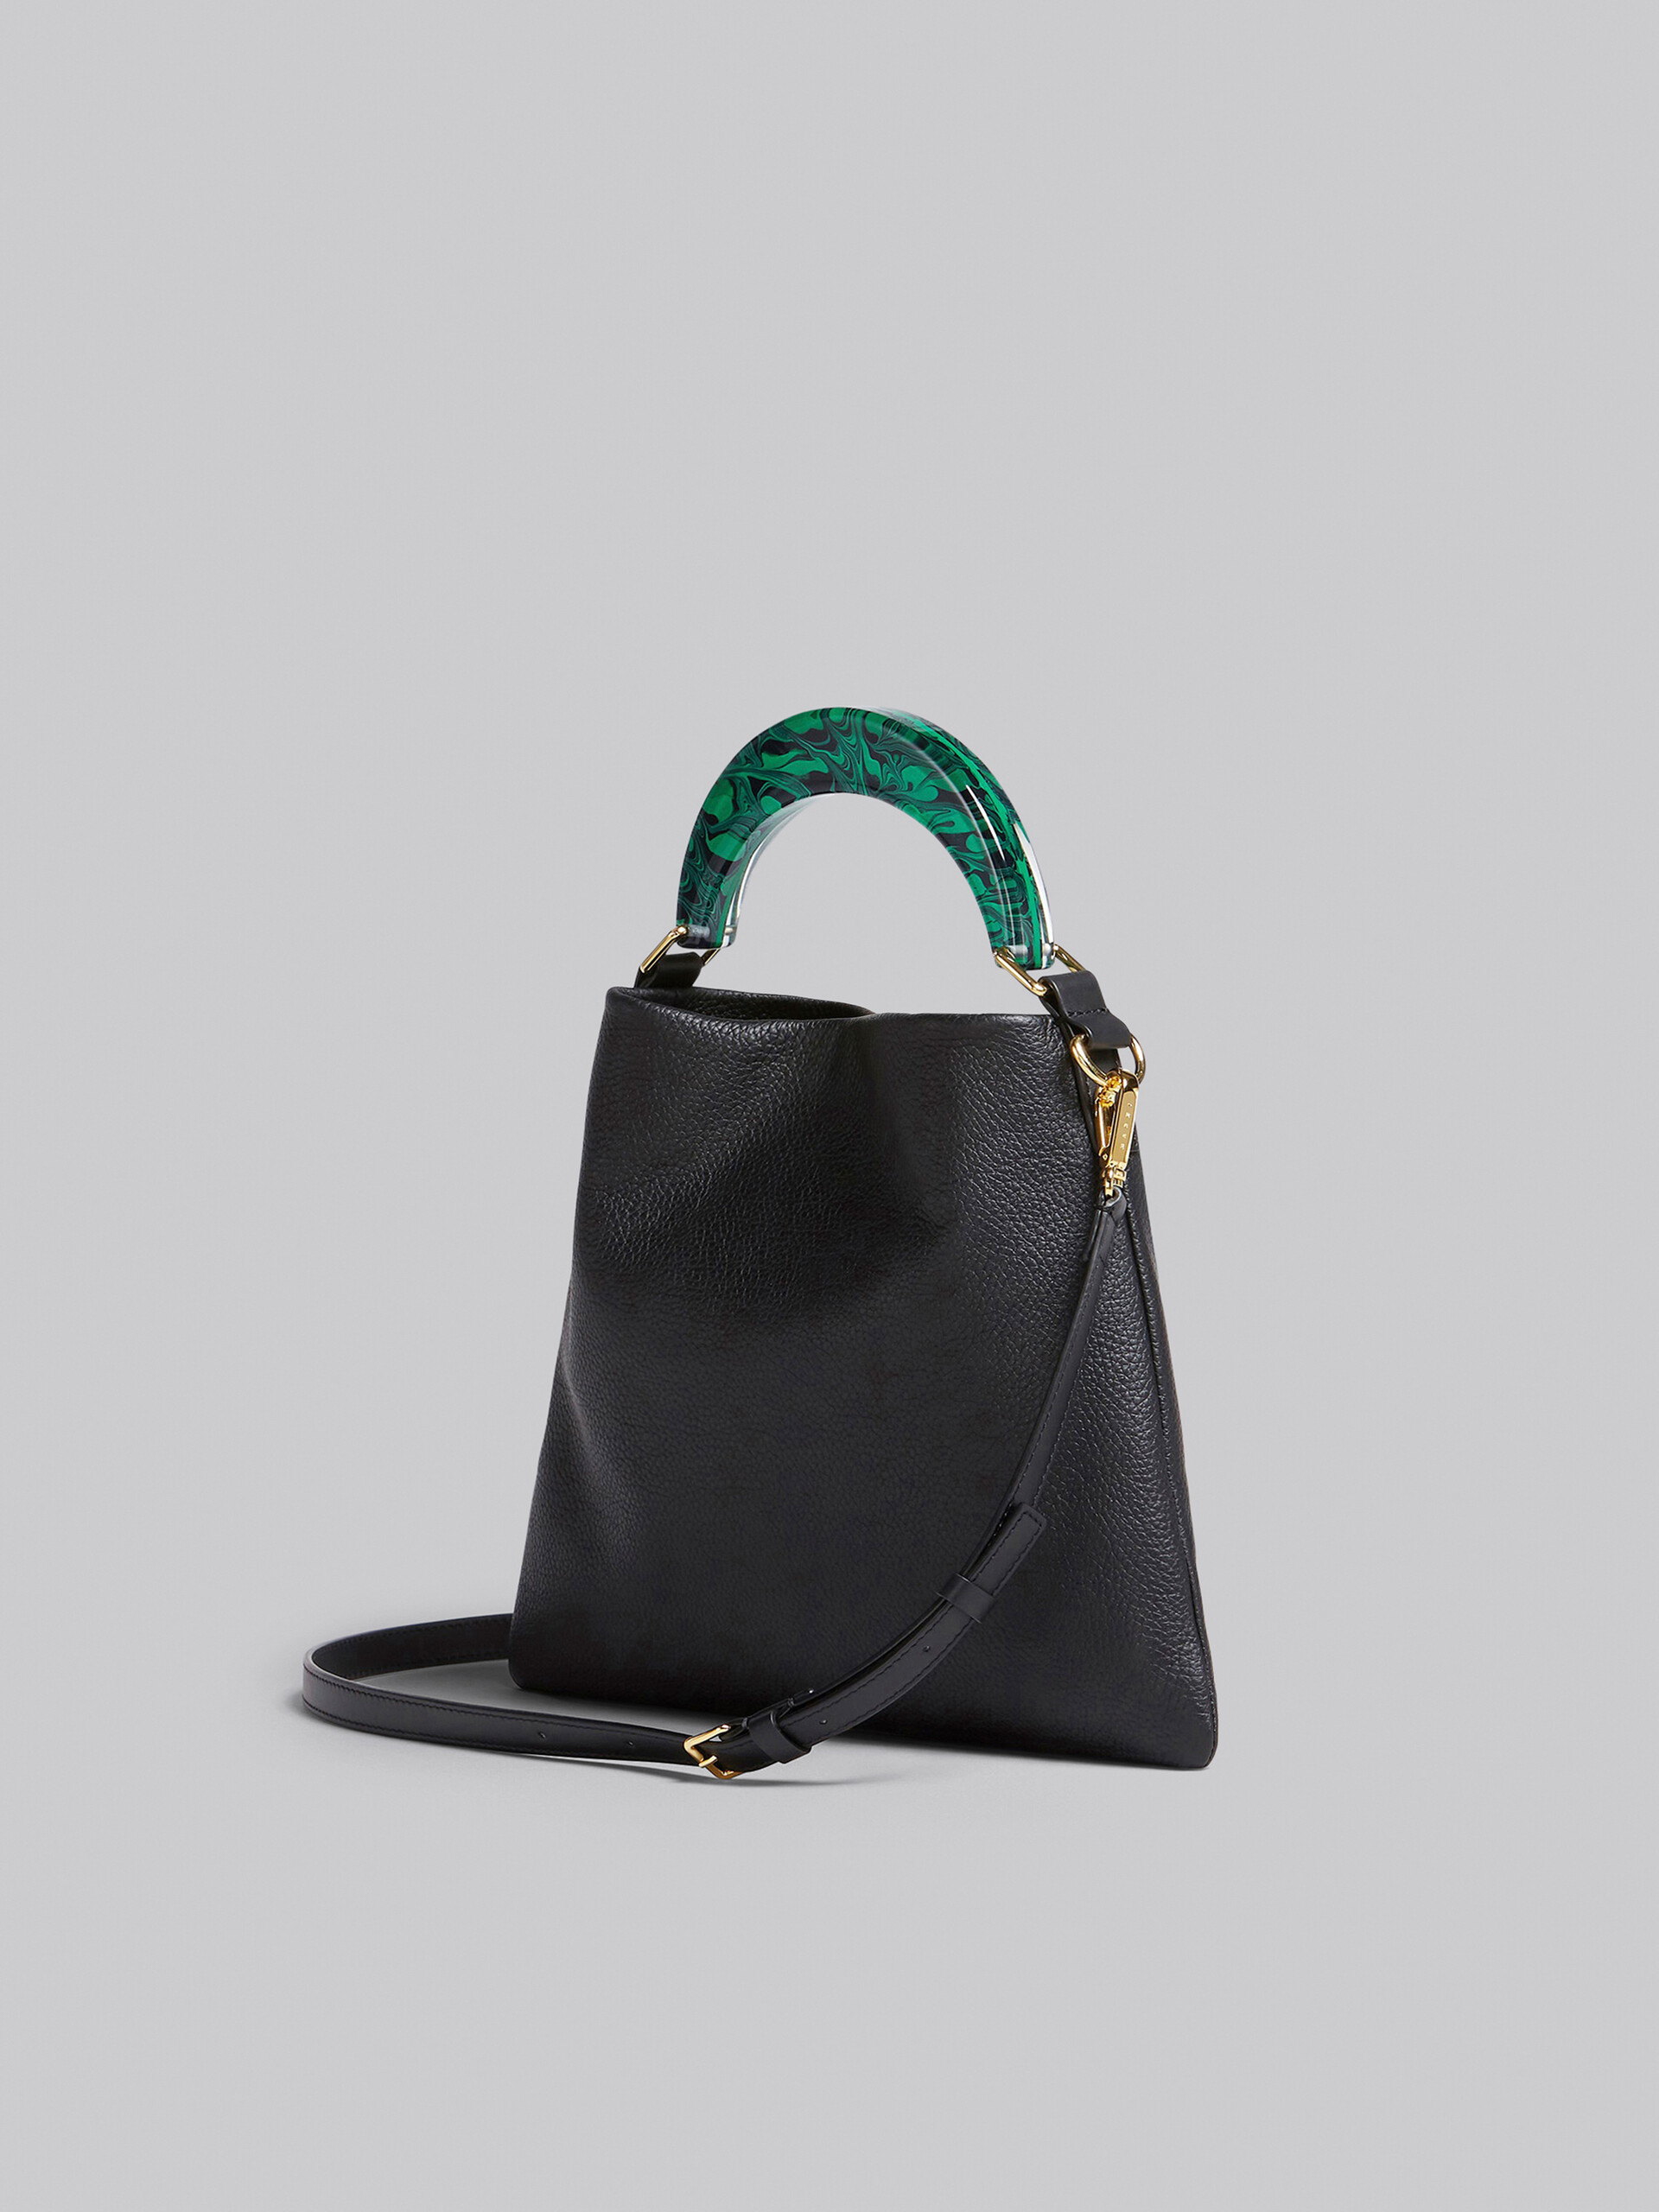 Petit sac Venice en cuir noir - Sacs portés épaule - Image 3